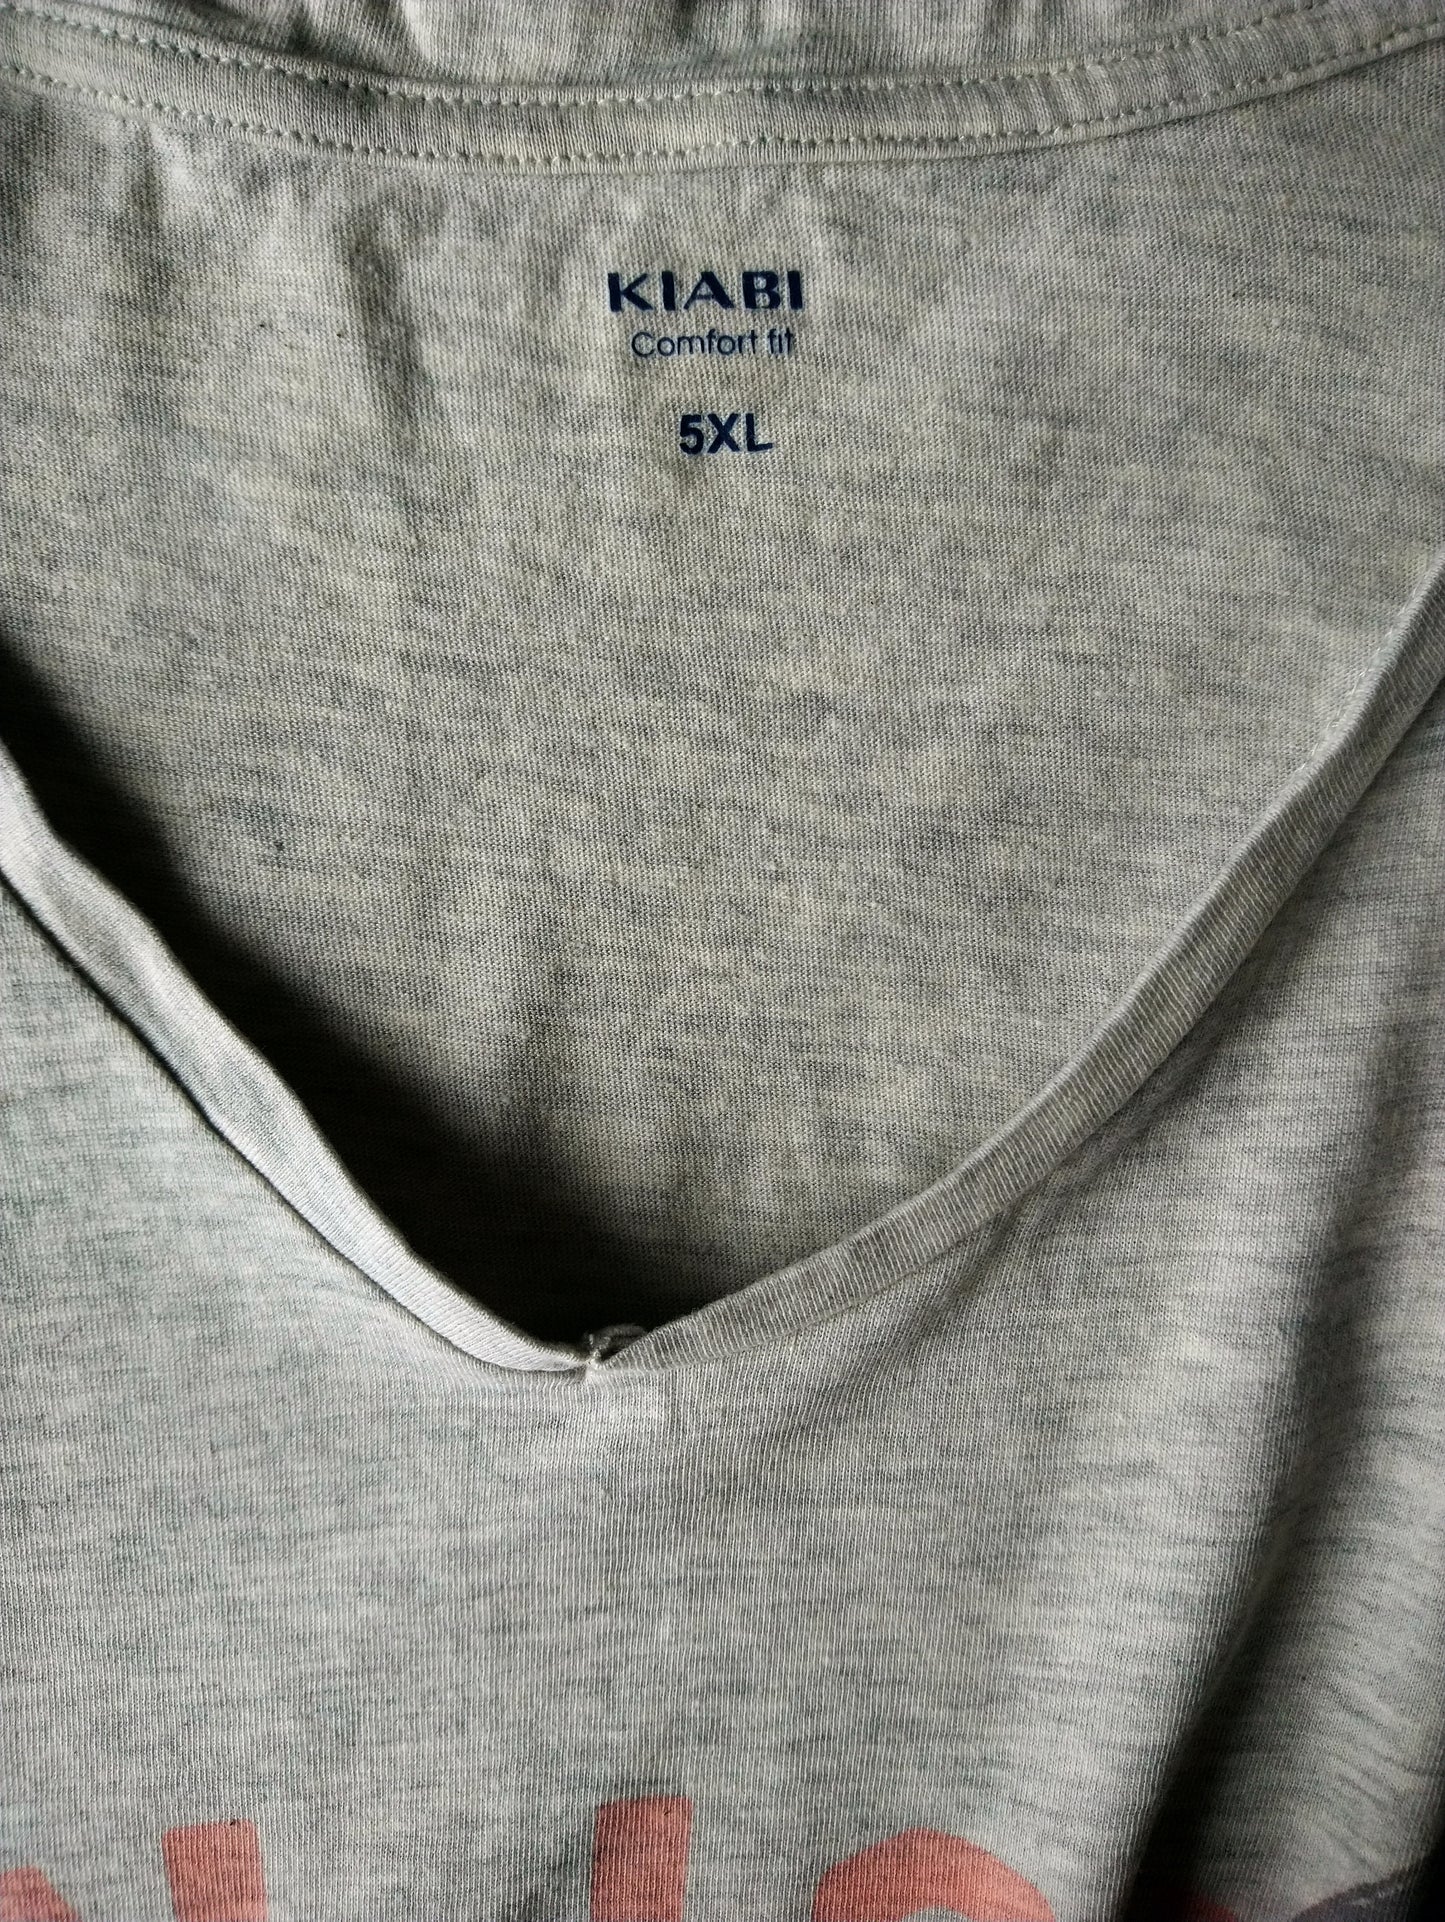 Kiabi shirt met V-hals. Beige Grijs gemêleerd met opdruk. Maat 5XL / XXXXXL. Comfort Fit.